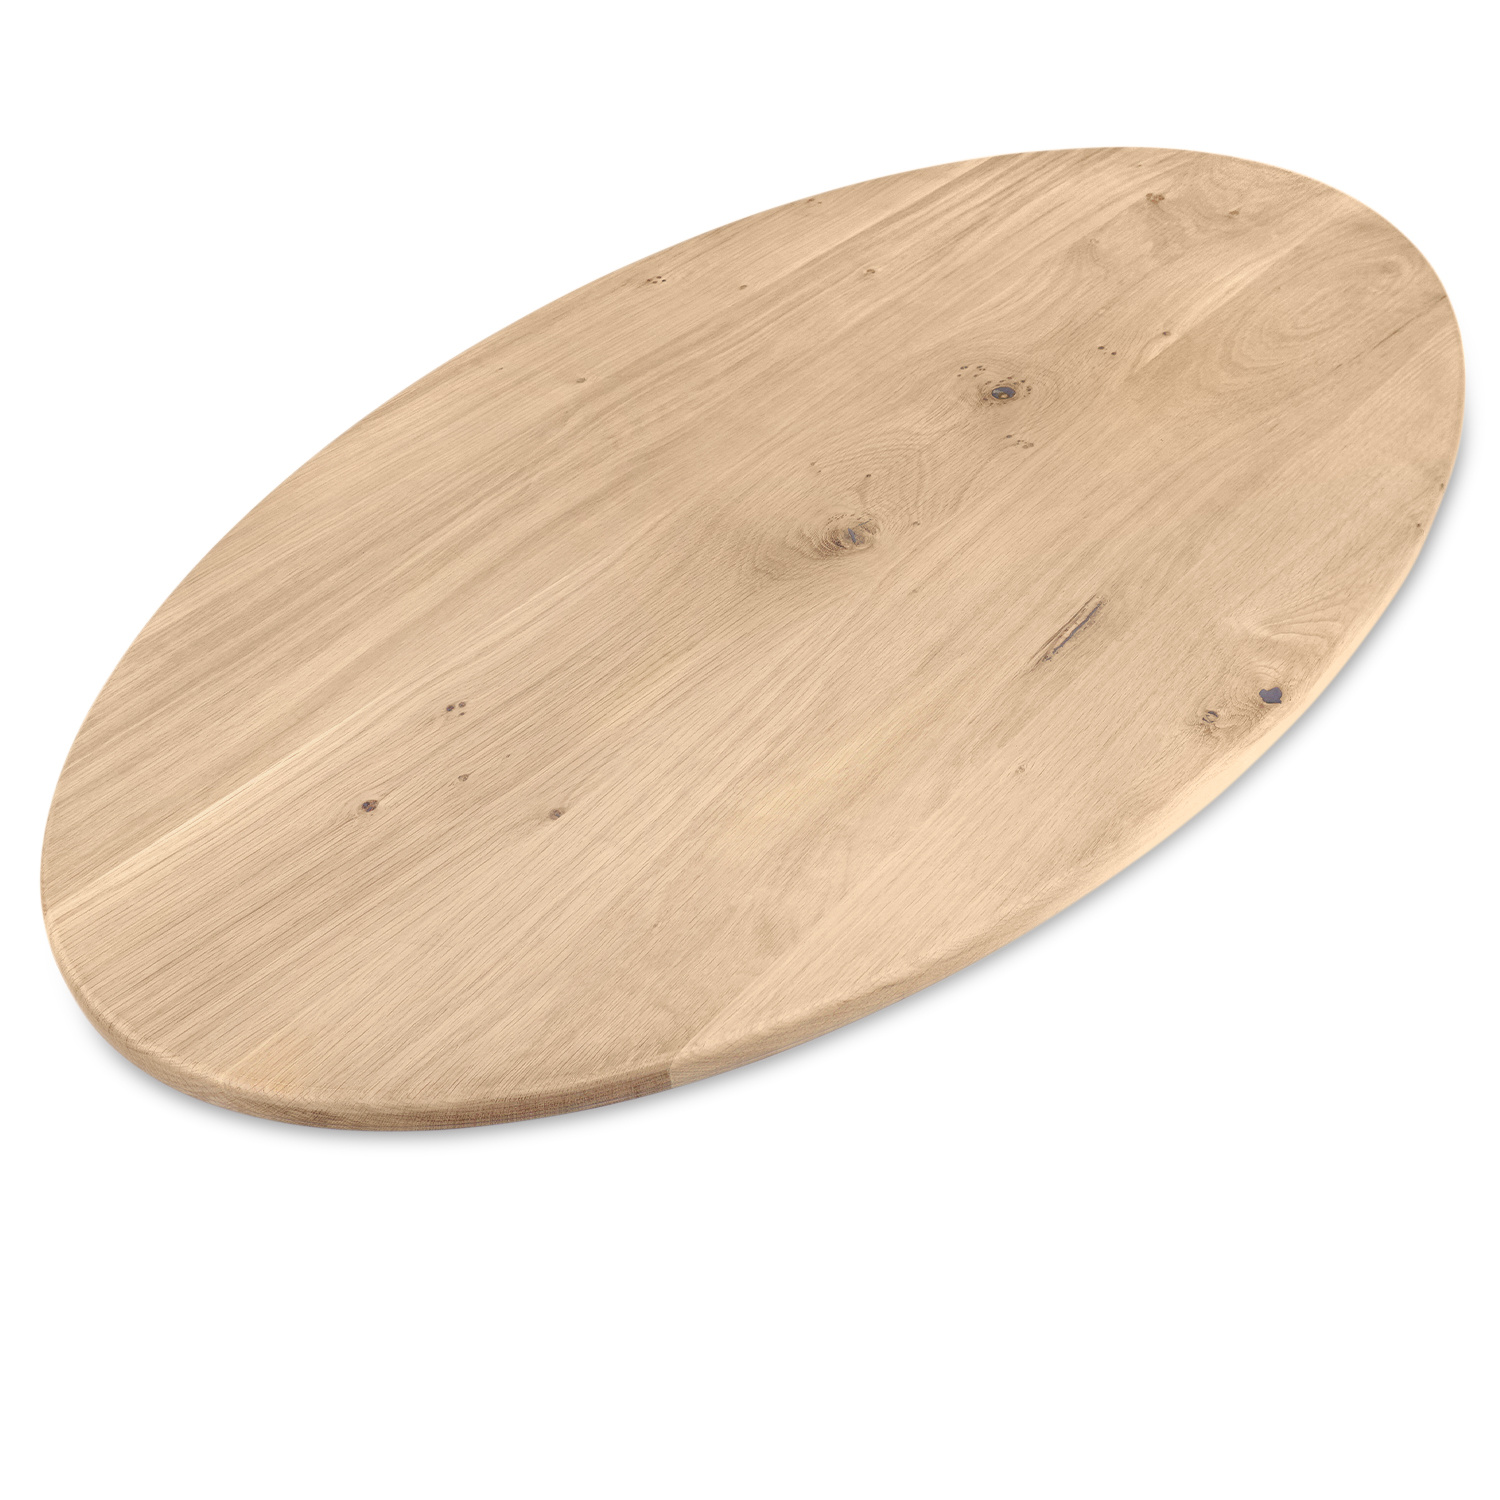  Ovaal eiken tafelblad op maat - 3 cm dik (1-laag) - extra rustiek Europees eikenhout - met extra brede lamellen (circa 14-20 cm)nhout - verlijmd kd 8-12% - 40-117x80-247 cm